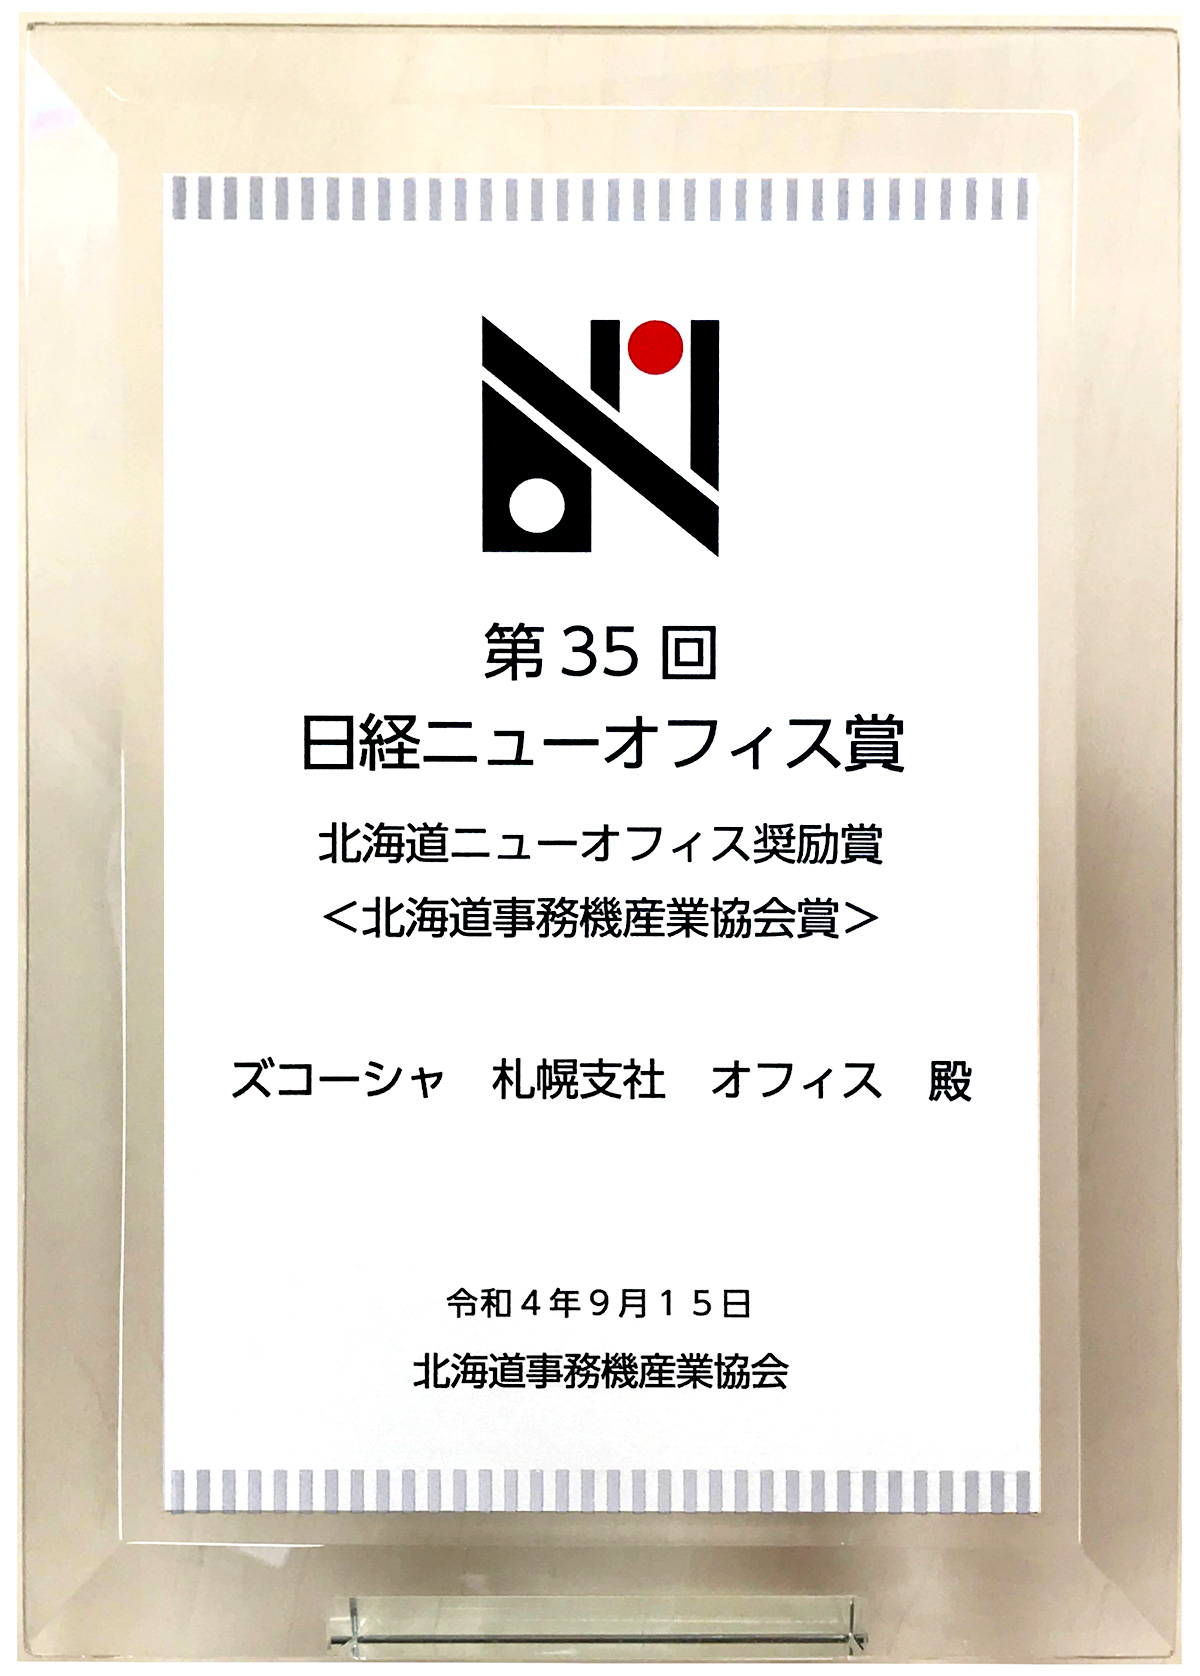 札幌支社オフィスが日経ニューオフィス賞を受賞